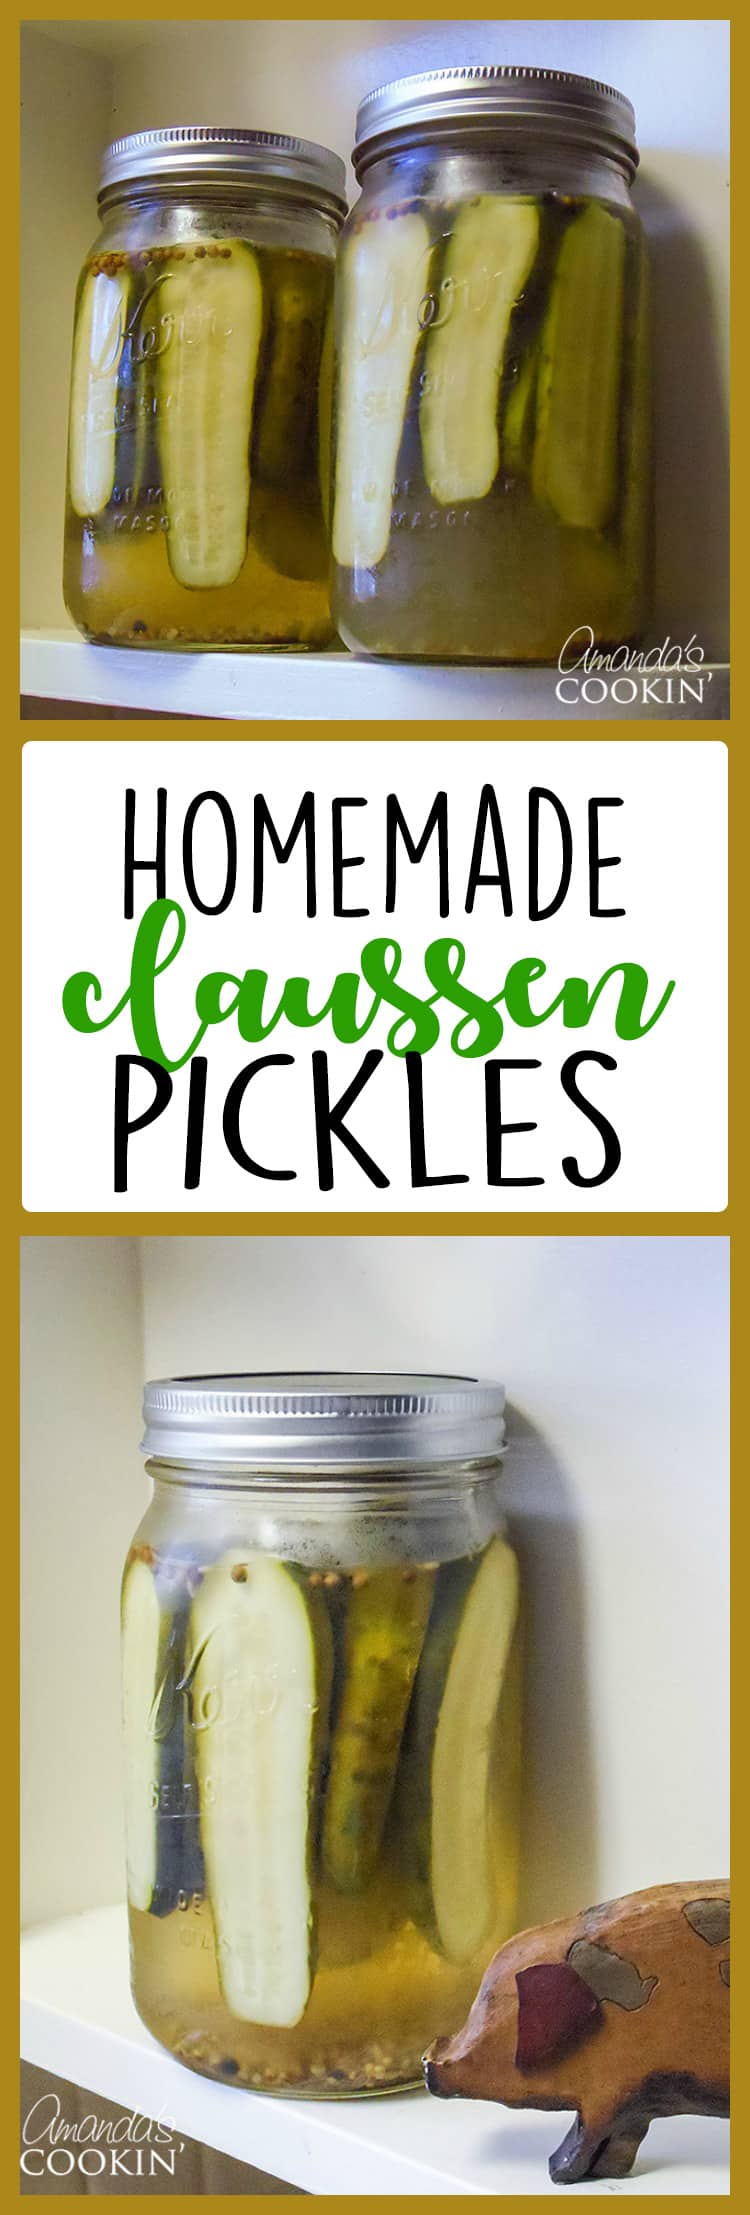 imagem de interesse com texto para pickles